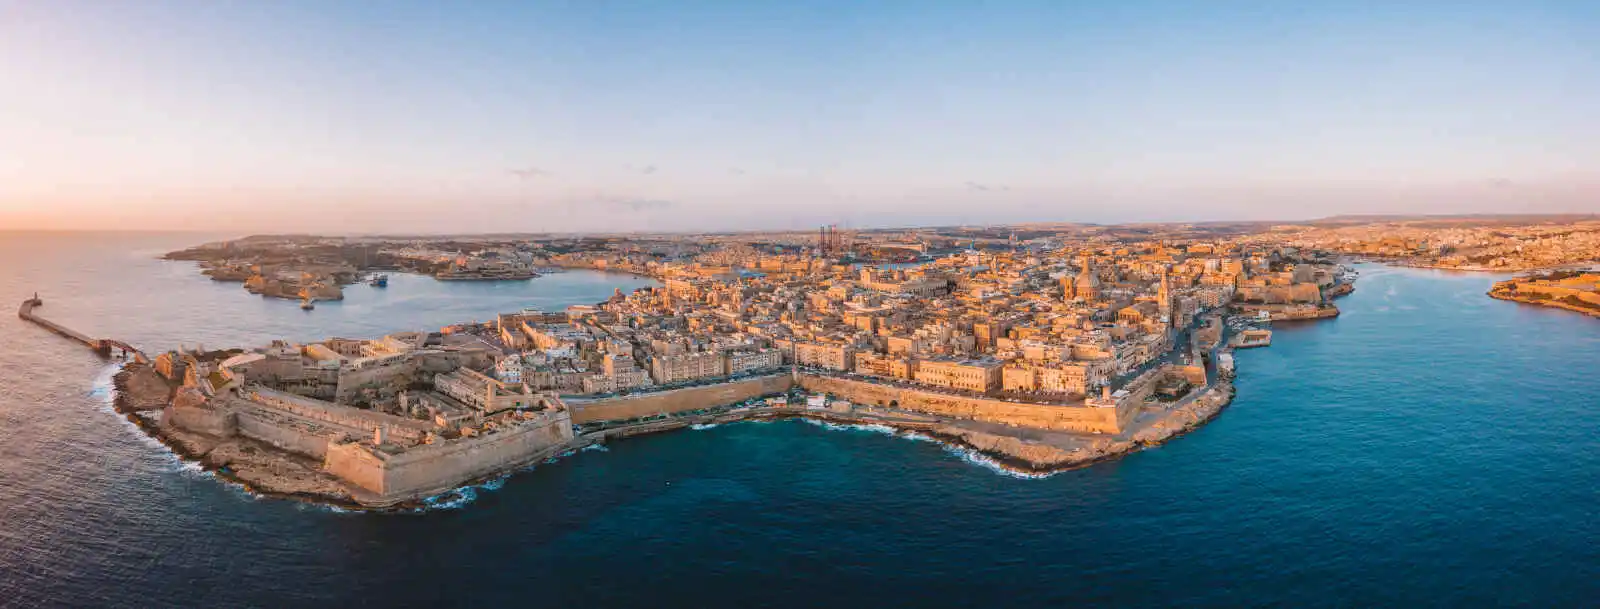 Coucher de soleil, La Valette, Malte